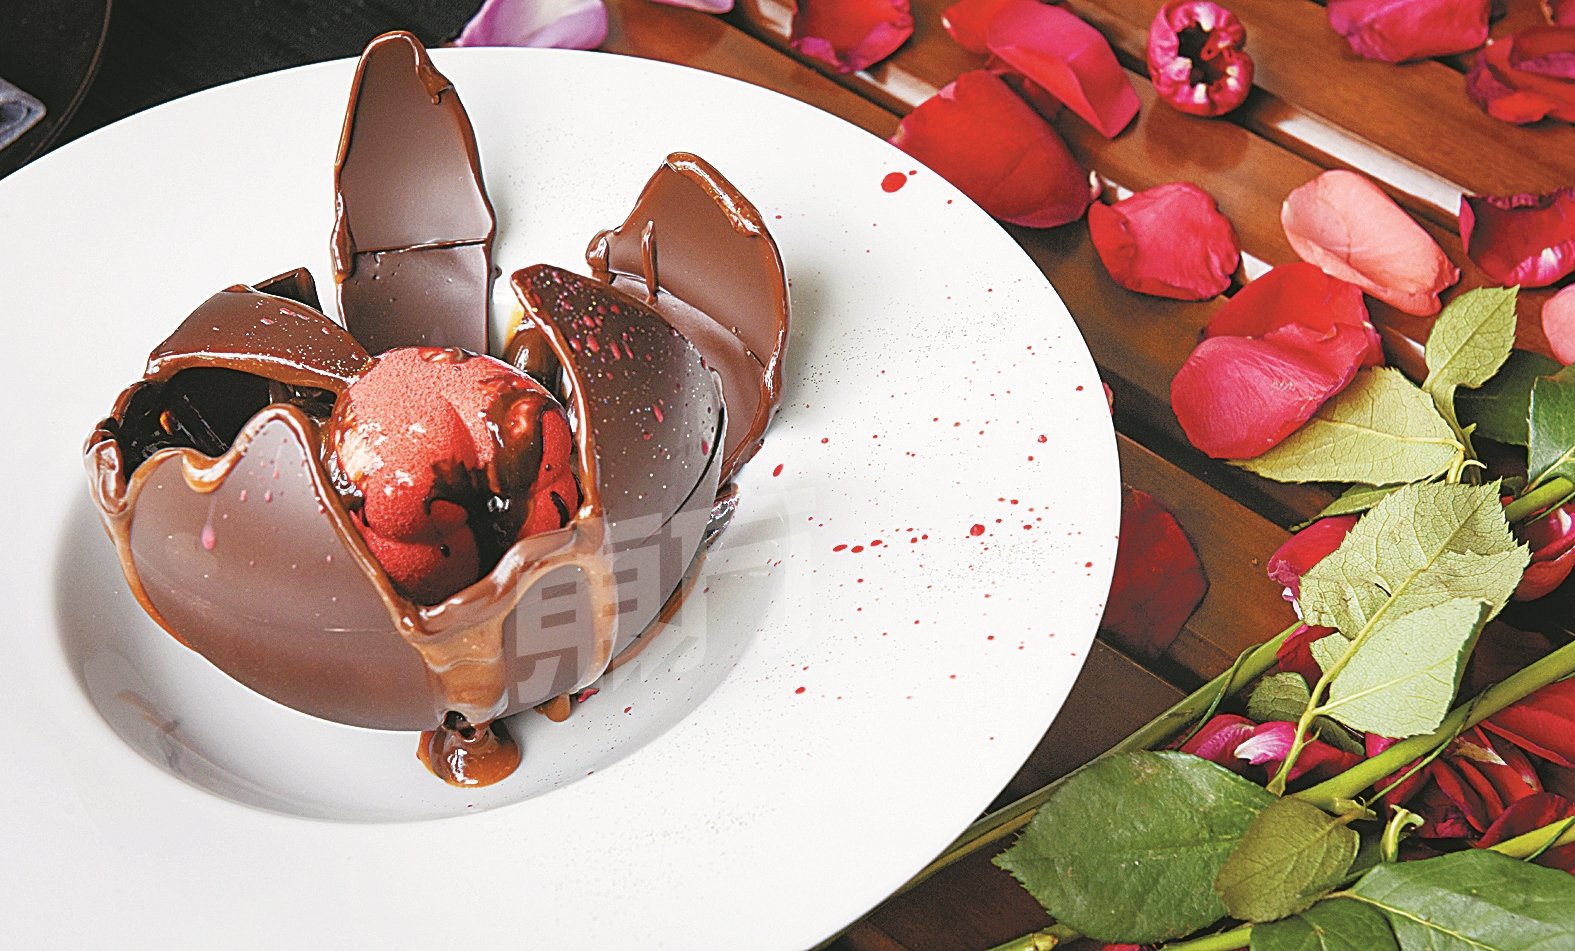 林佩琦和袁锦伦首尝W Hotel的情人节甜品“100% of Love”，由64%的黑巧克力砌成的原方体、淋下热巧克力融化后，里头有36%的心型玫瑰白巧克力奶油冻，期待你来一亲芳泽。